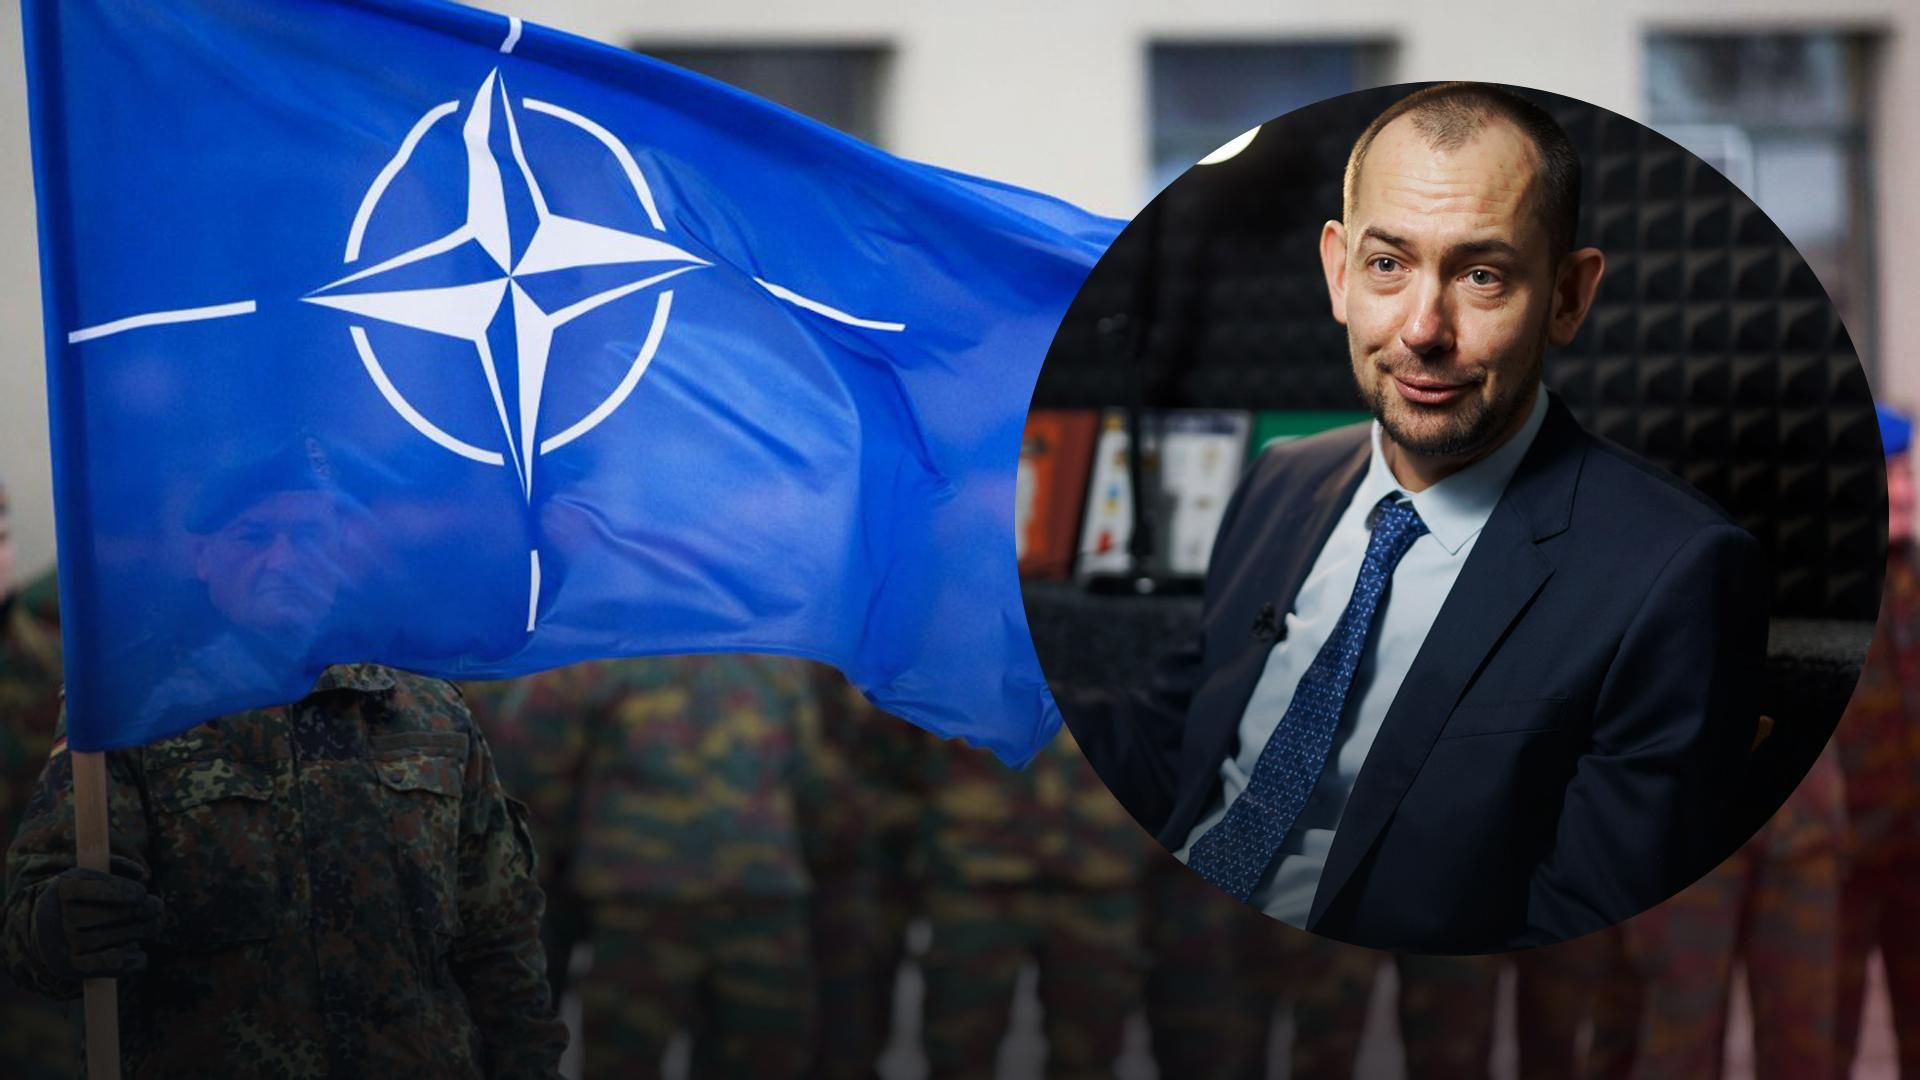 НАТО безразлично, Россию никто не боится, - Цымбалюк